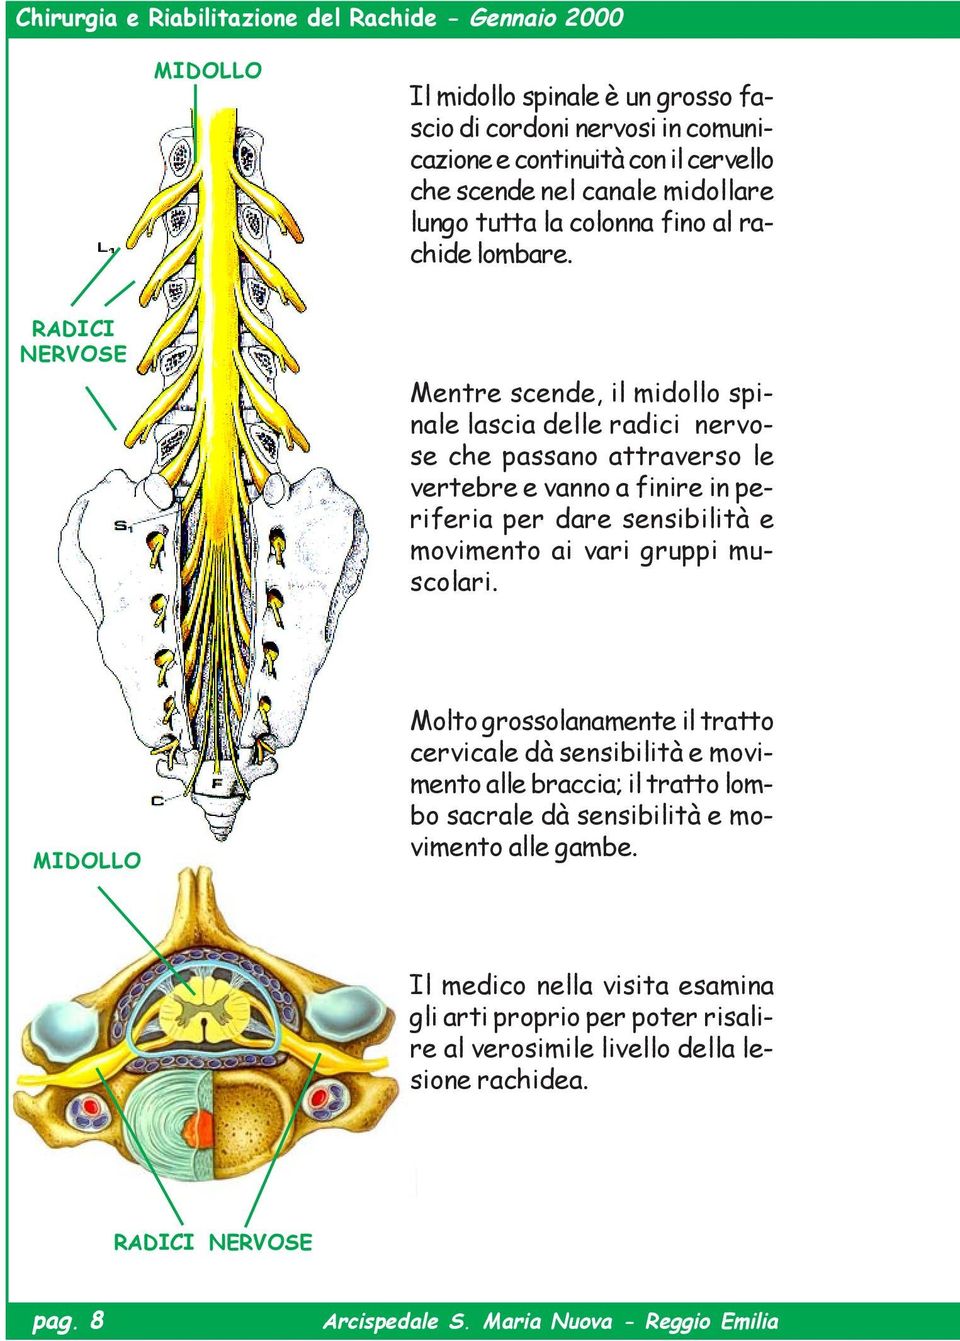 RADICI NERVOSE Mentre scende, il midollo spinale lascia delle radici nervose che passano attraverso le vertebre e vanno a finire in periferia per dare sensibilità e movimento ai vari gruppi